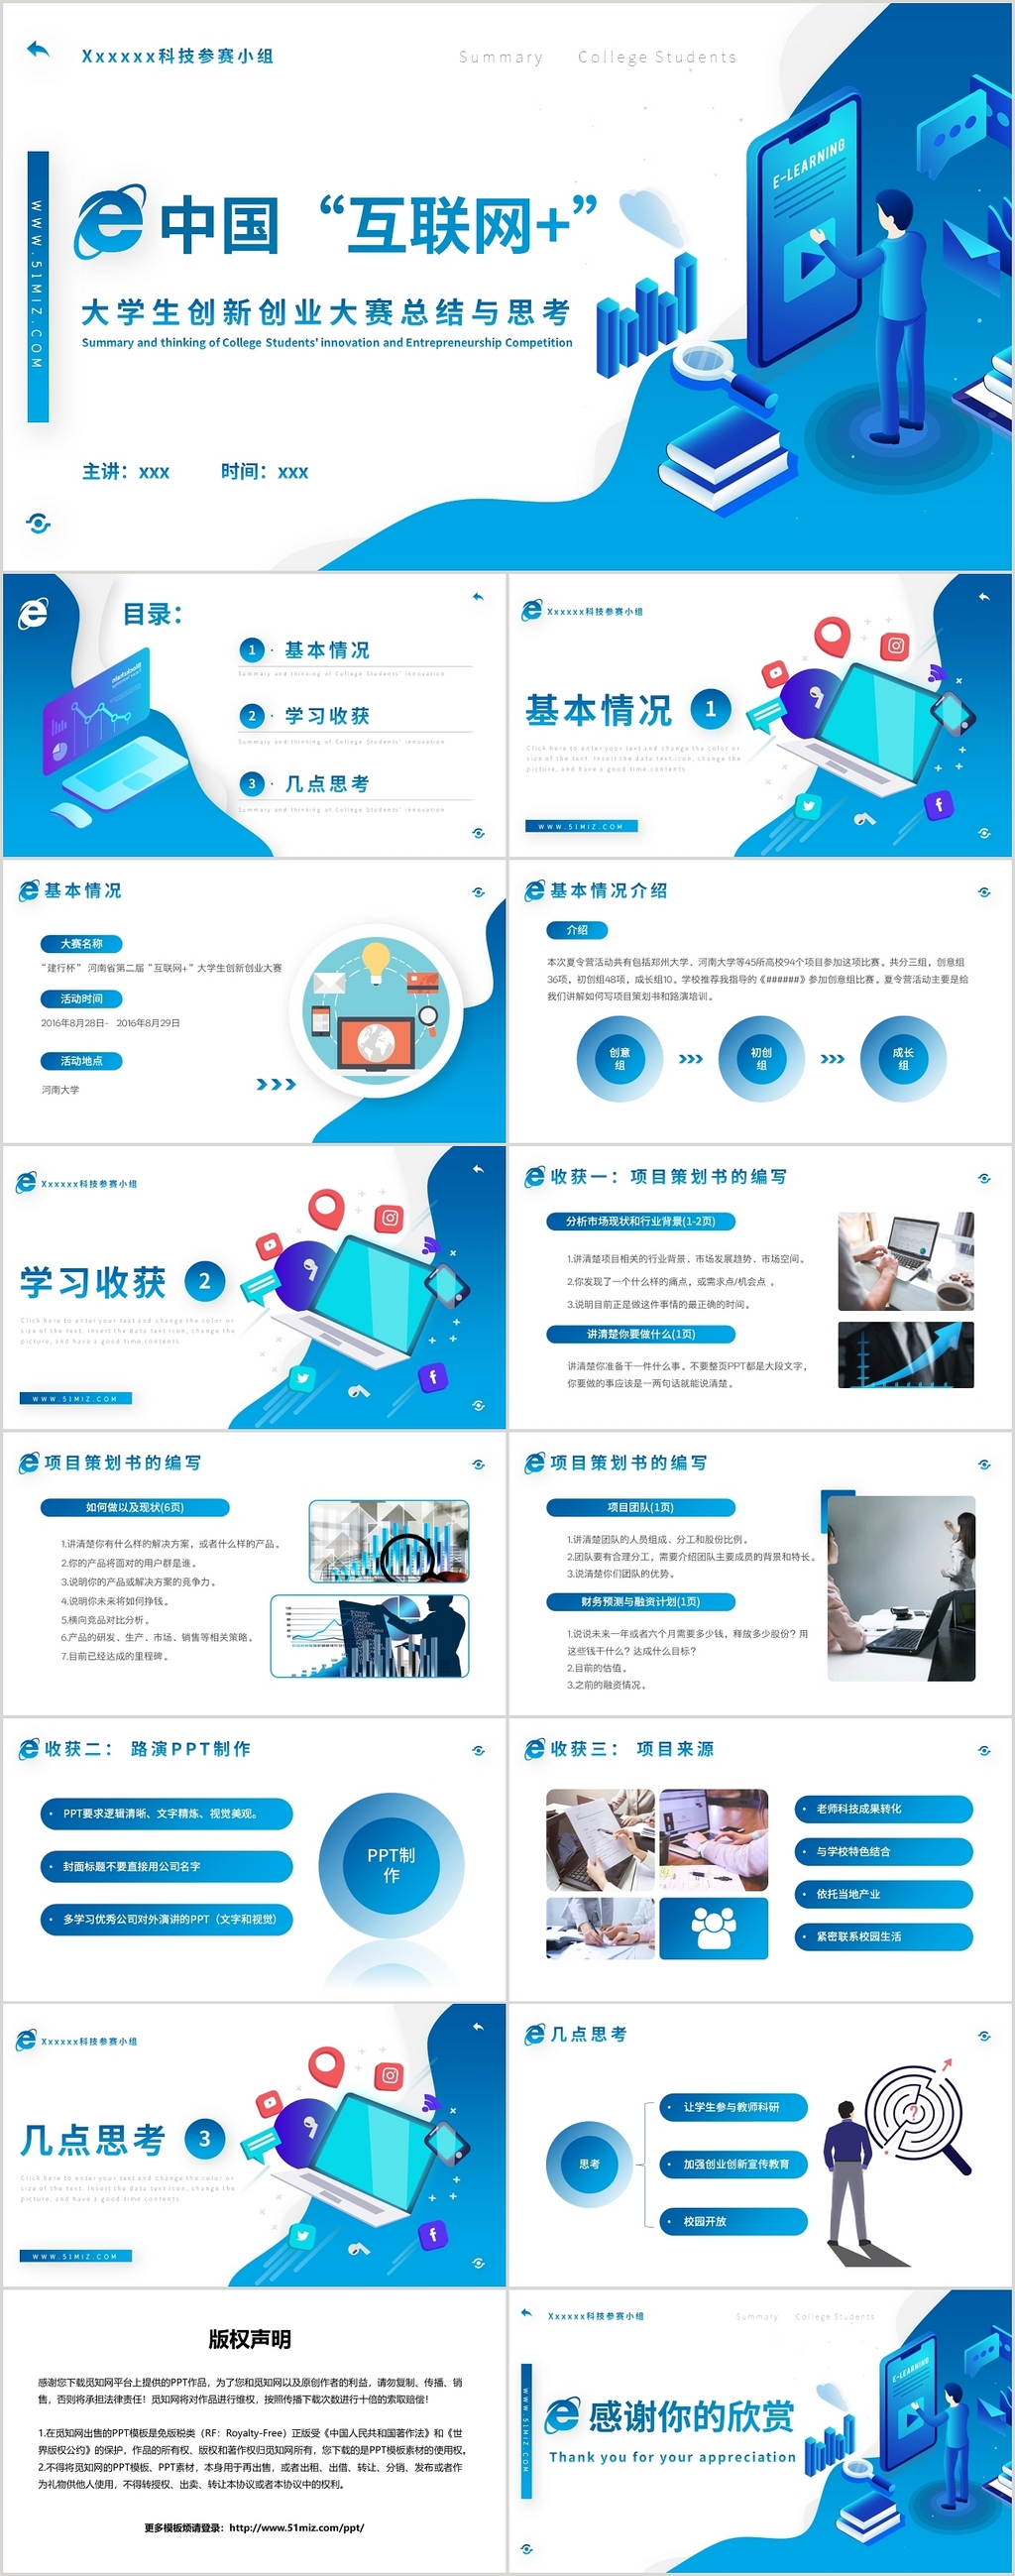 蓝色简约风中国互联网加大学生创新创业总结PPT模板